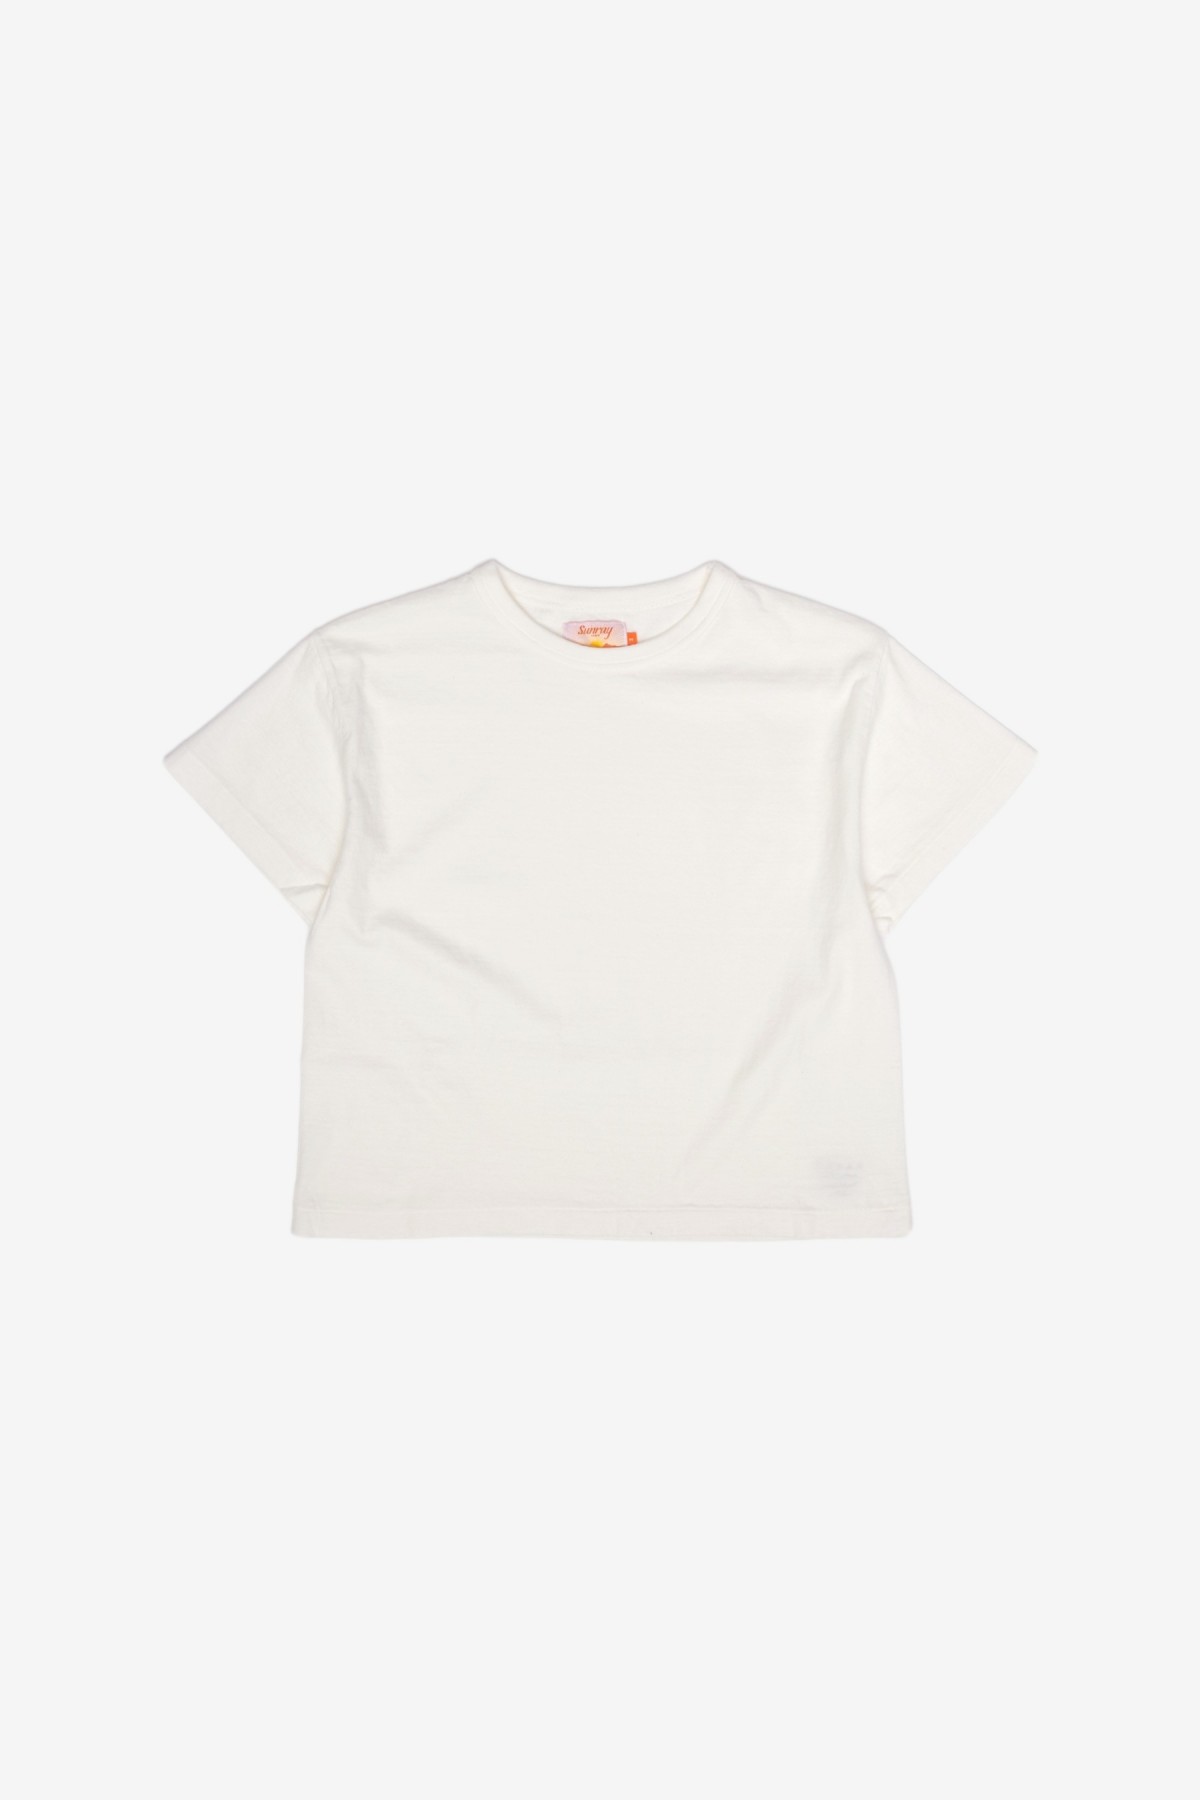 Sunray Sportswear Hi'Aka Short Sleeve T-Shirt in Off White